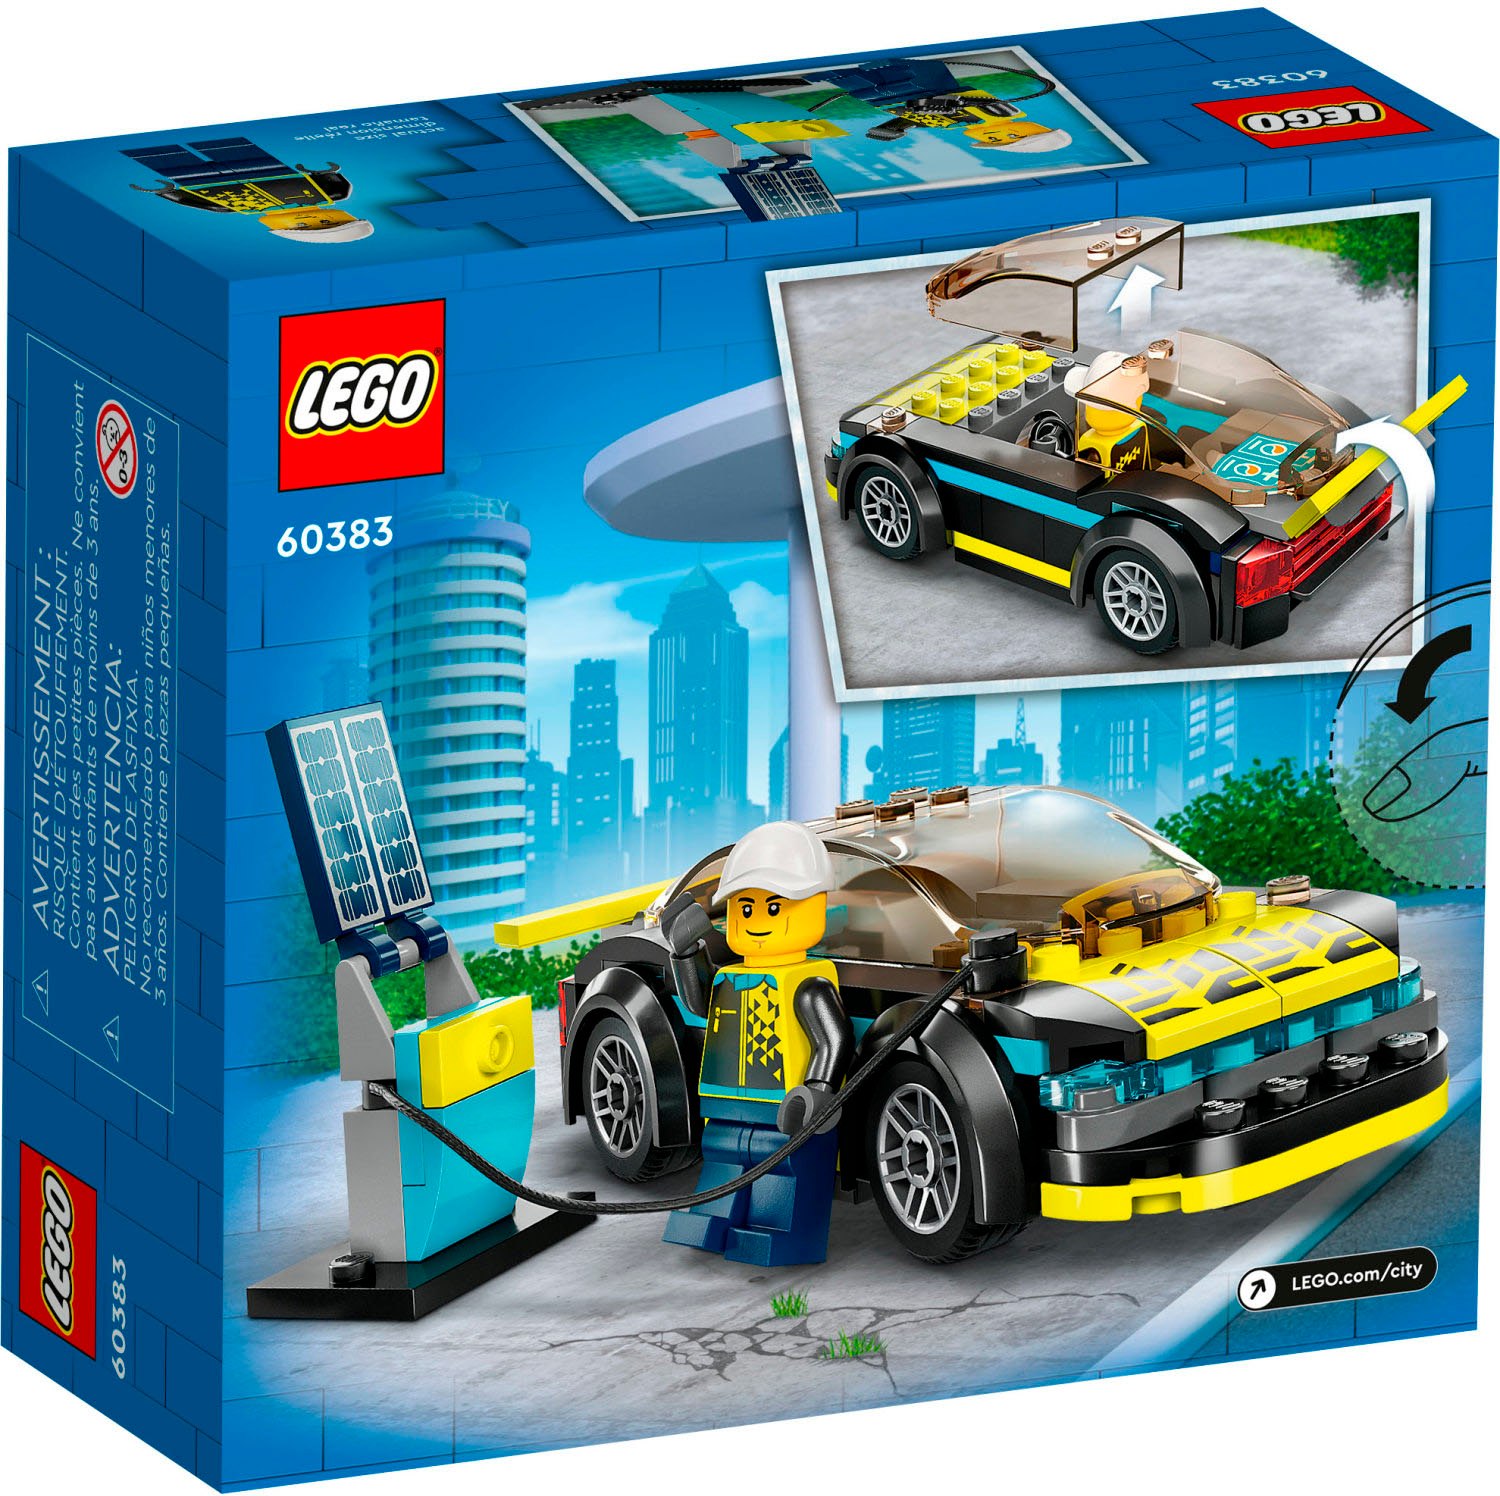 Træts webspindel Wardian sag har taget fejl LEGO City Electric Sports Car 60383 6420682 - Best Buy